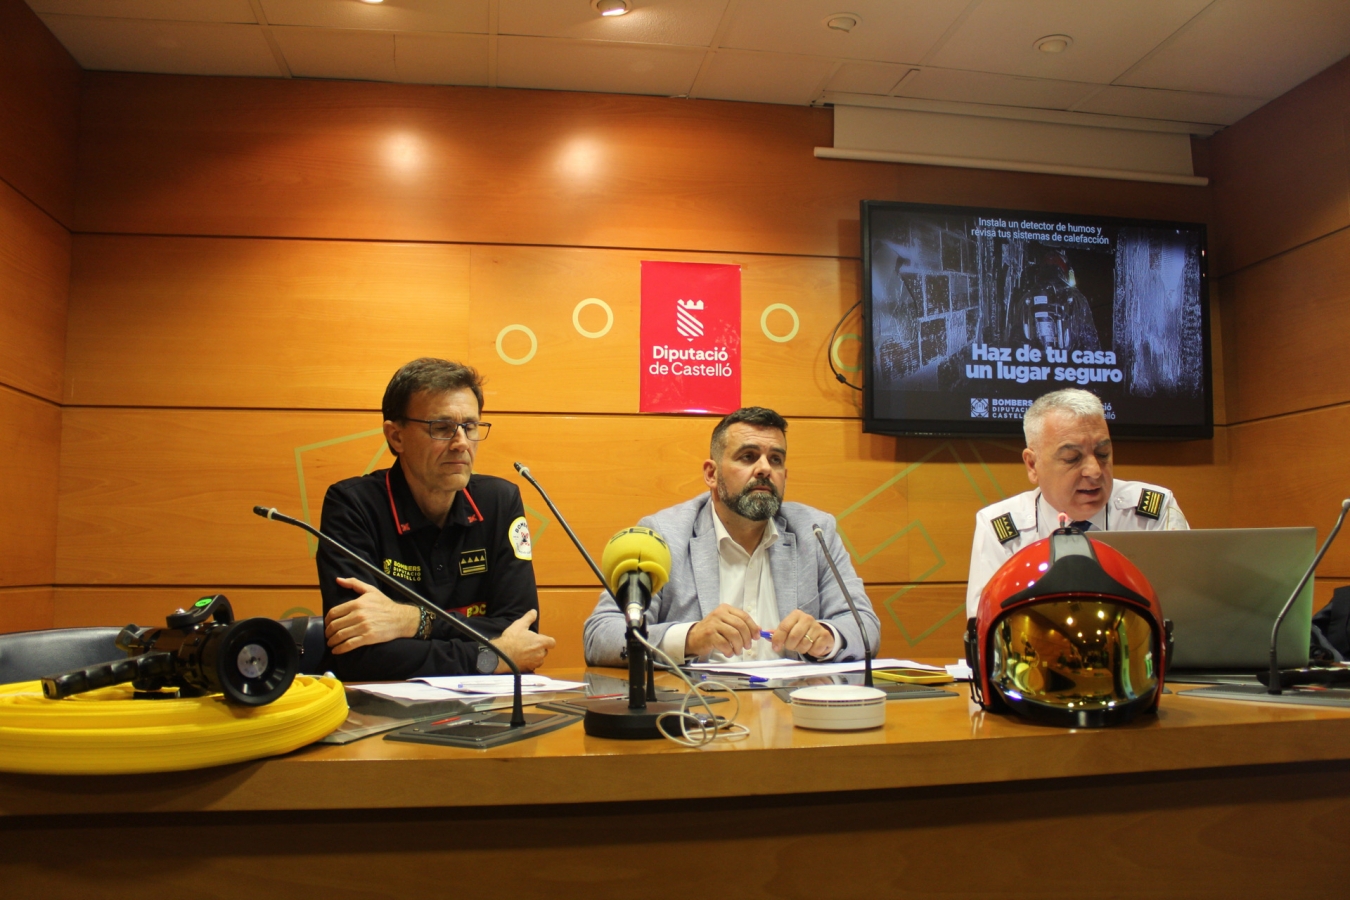 La Diputación de Castellón refuerza sus trabajos de prevención de incendios con una campaña de sensibilización ciudadana